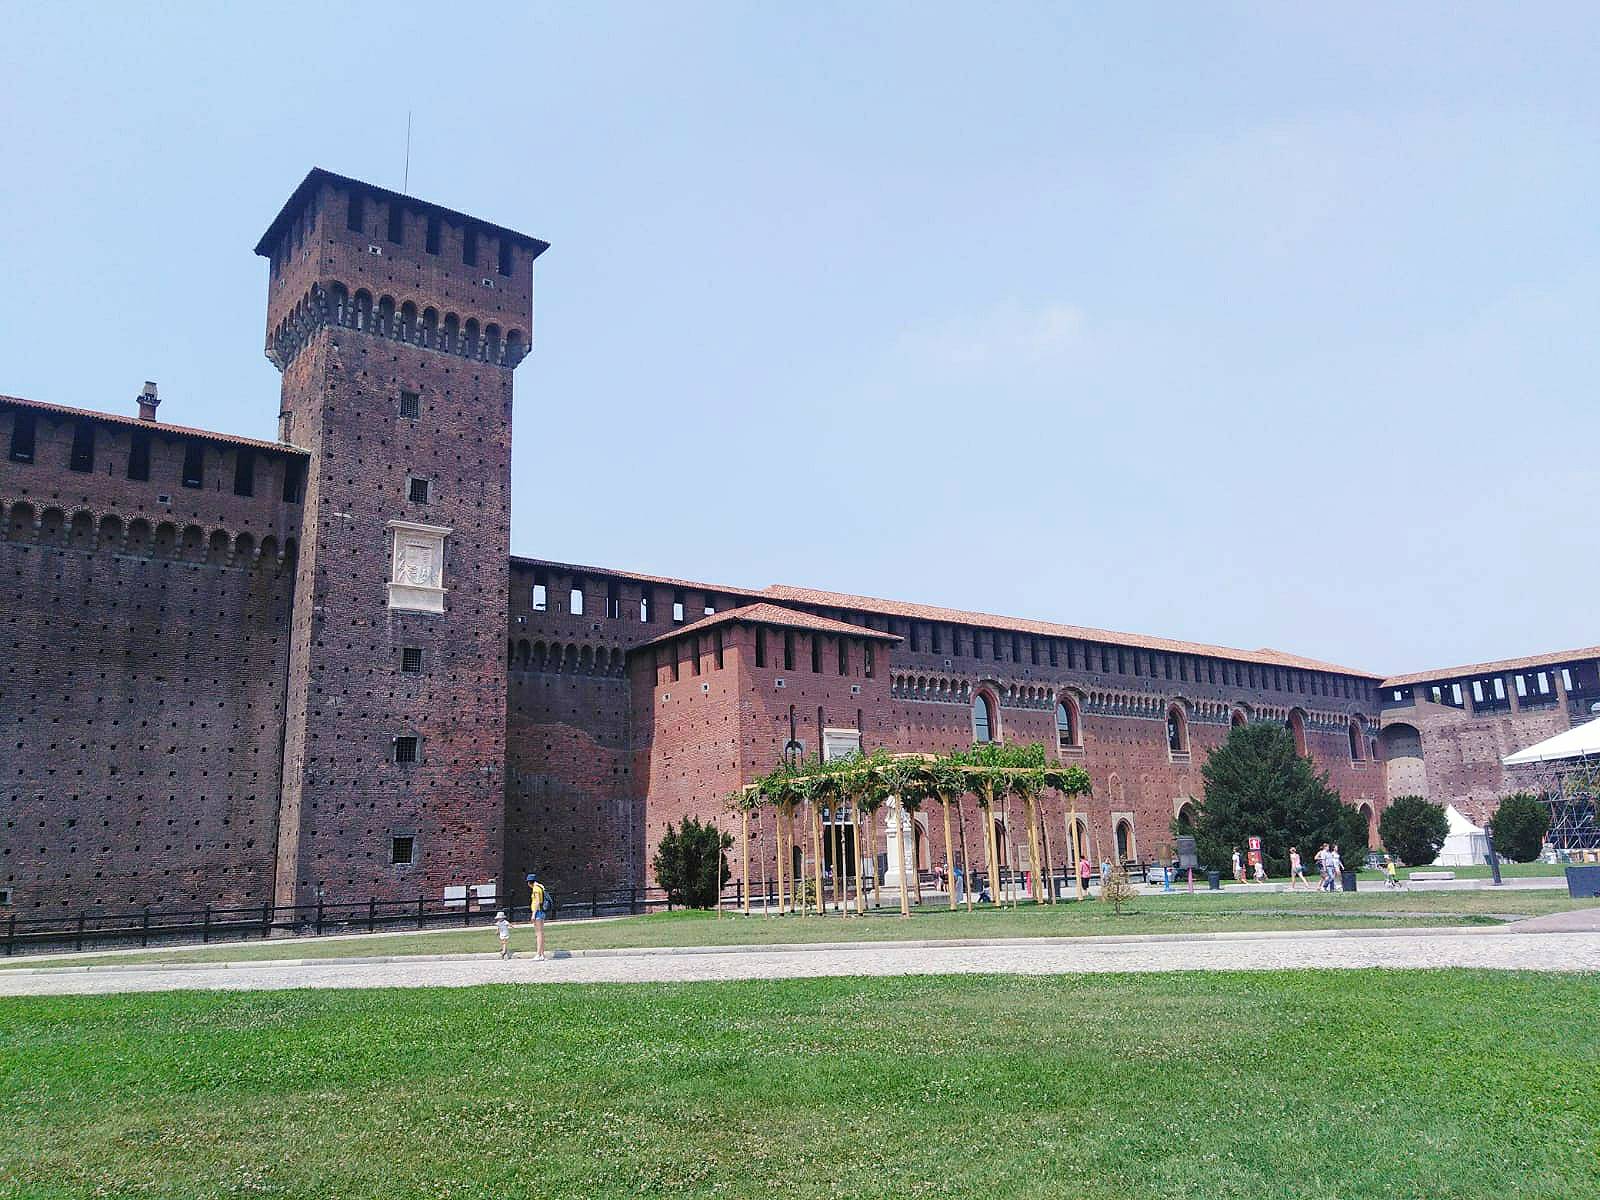 The Castello Sforzesco, decorated by artists like Leonardo da Vinci